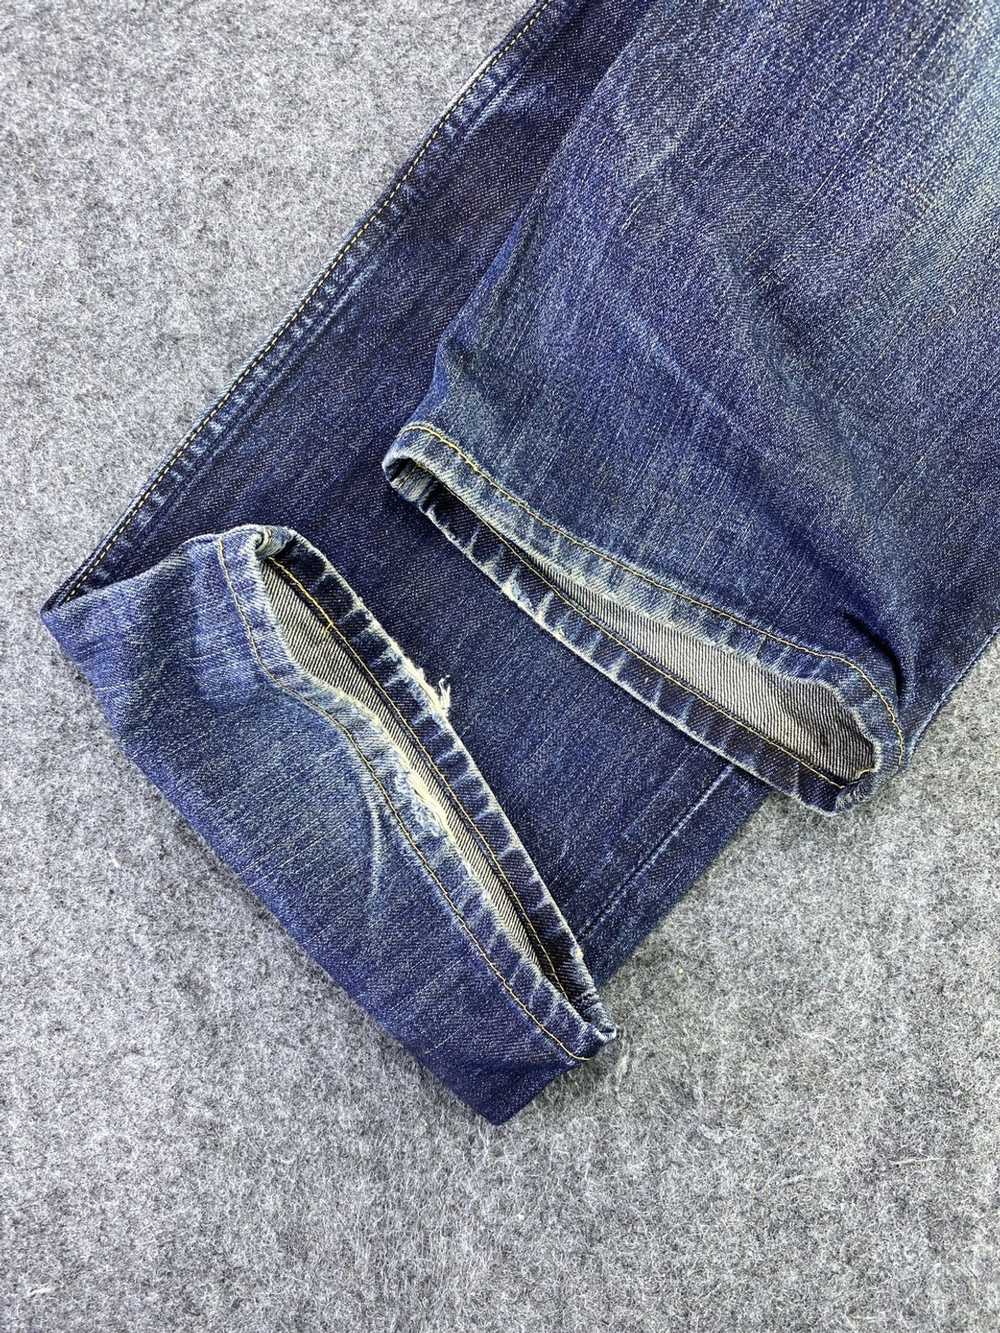 Jean × Levi's × Vintage Vintage Levis 502 Jeans D… - image 7